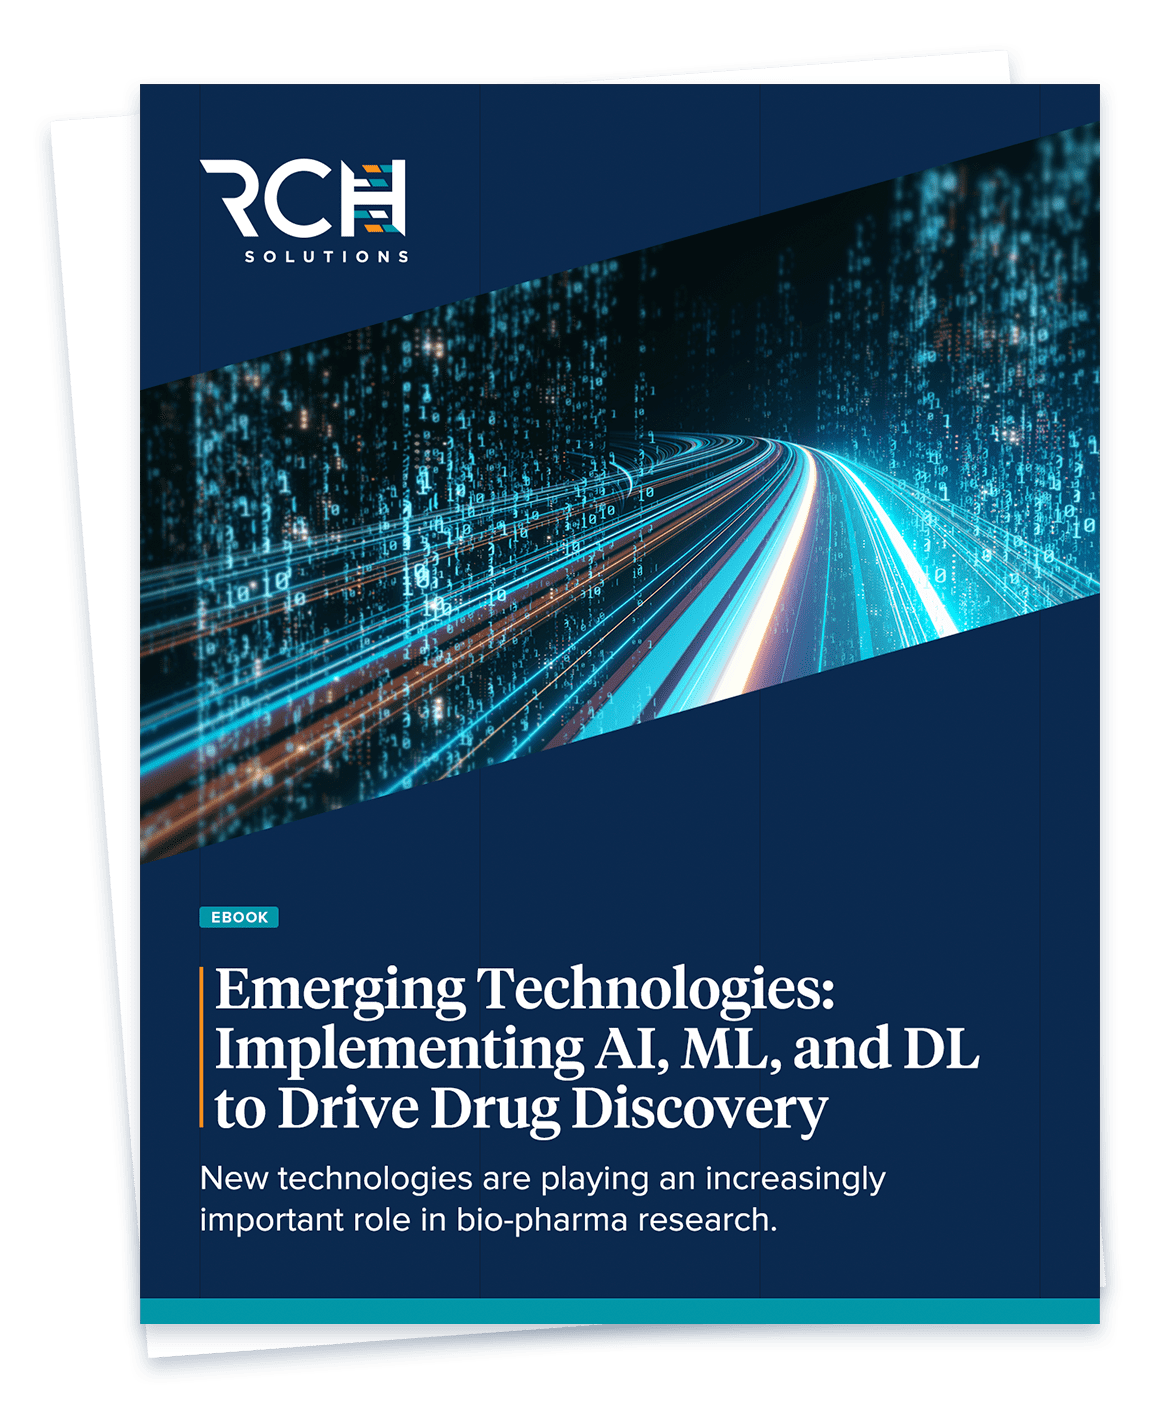 https://www.rchsolutions.com/wp-content/uploads/2022/02/RCH_eBook_EmergingTechnology_Thumbnail_2.png